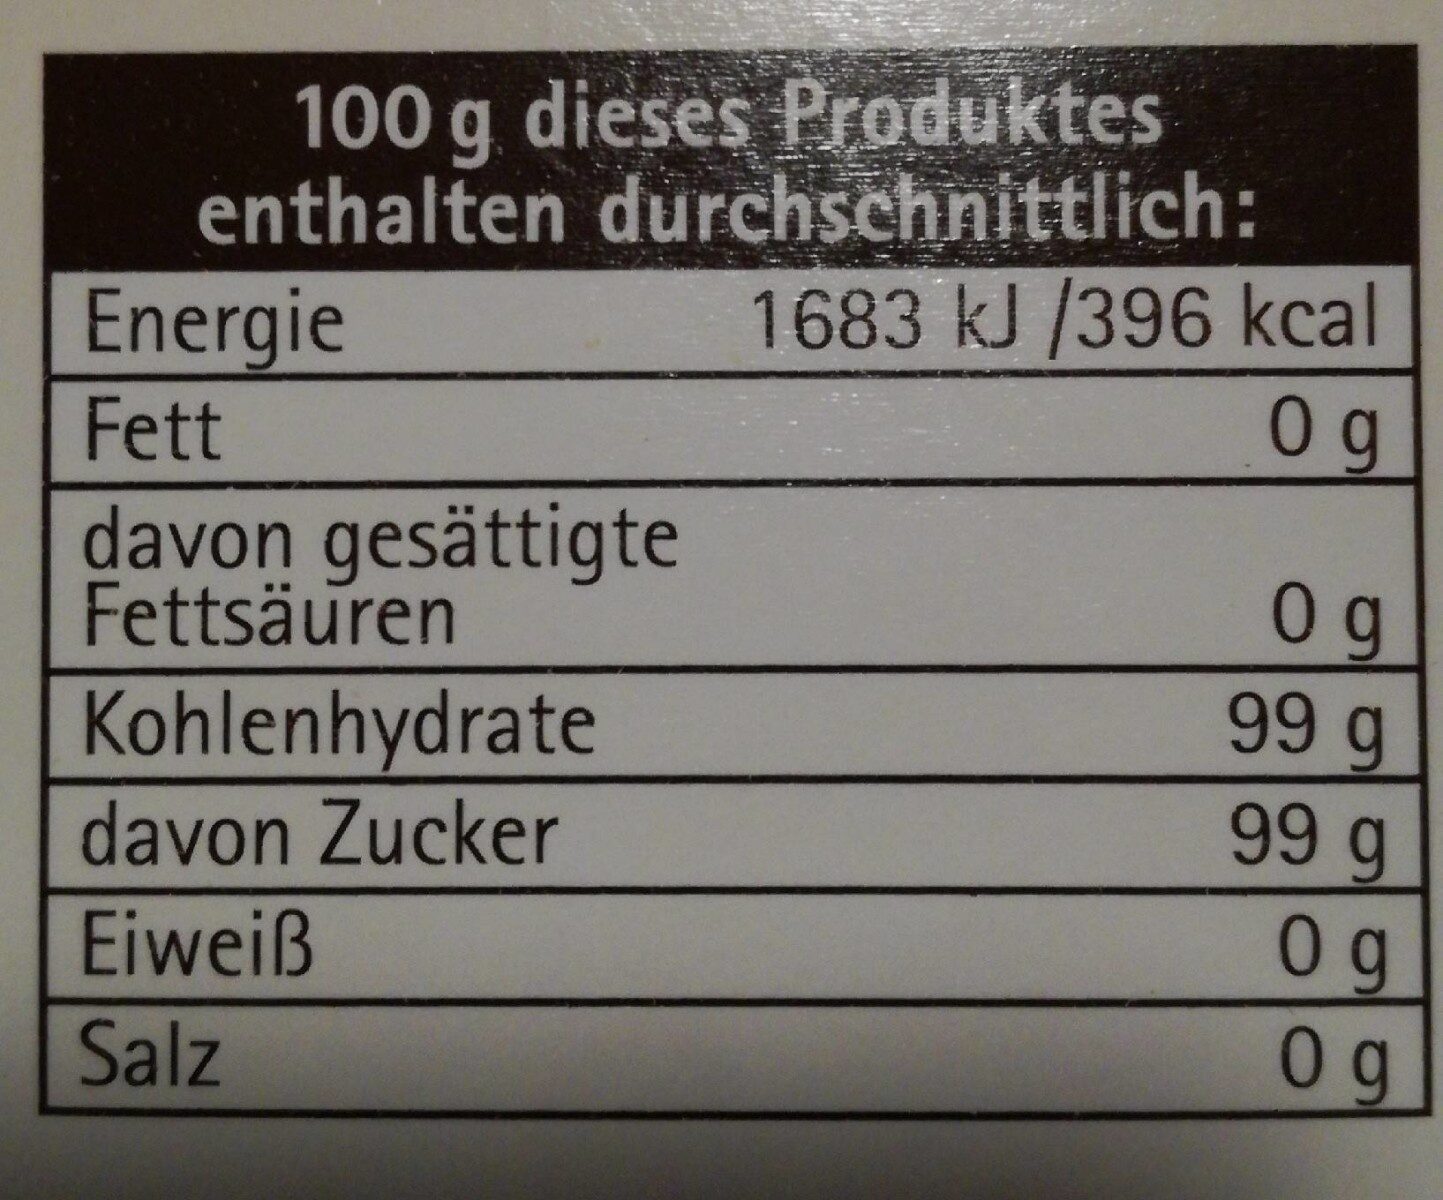 Brauner Rohrzucker - Nutrition facts - de